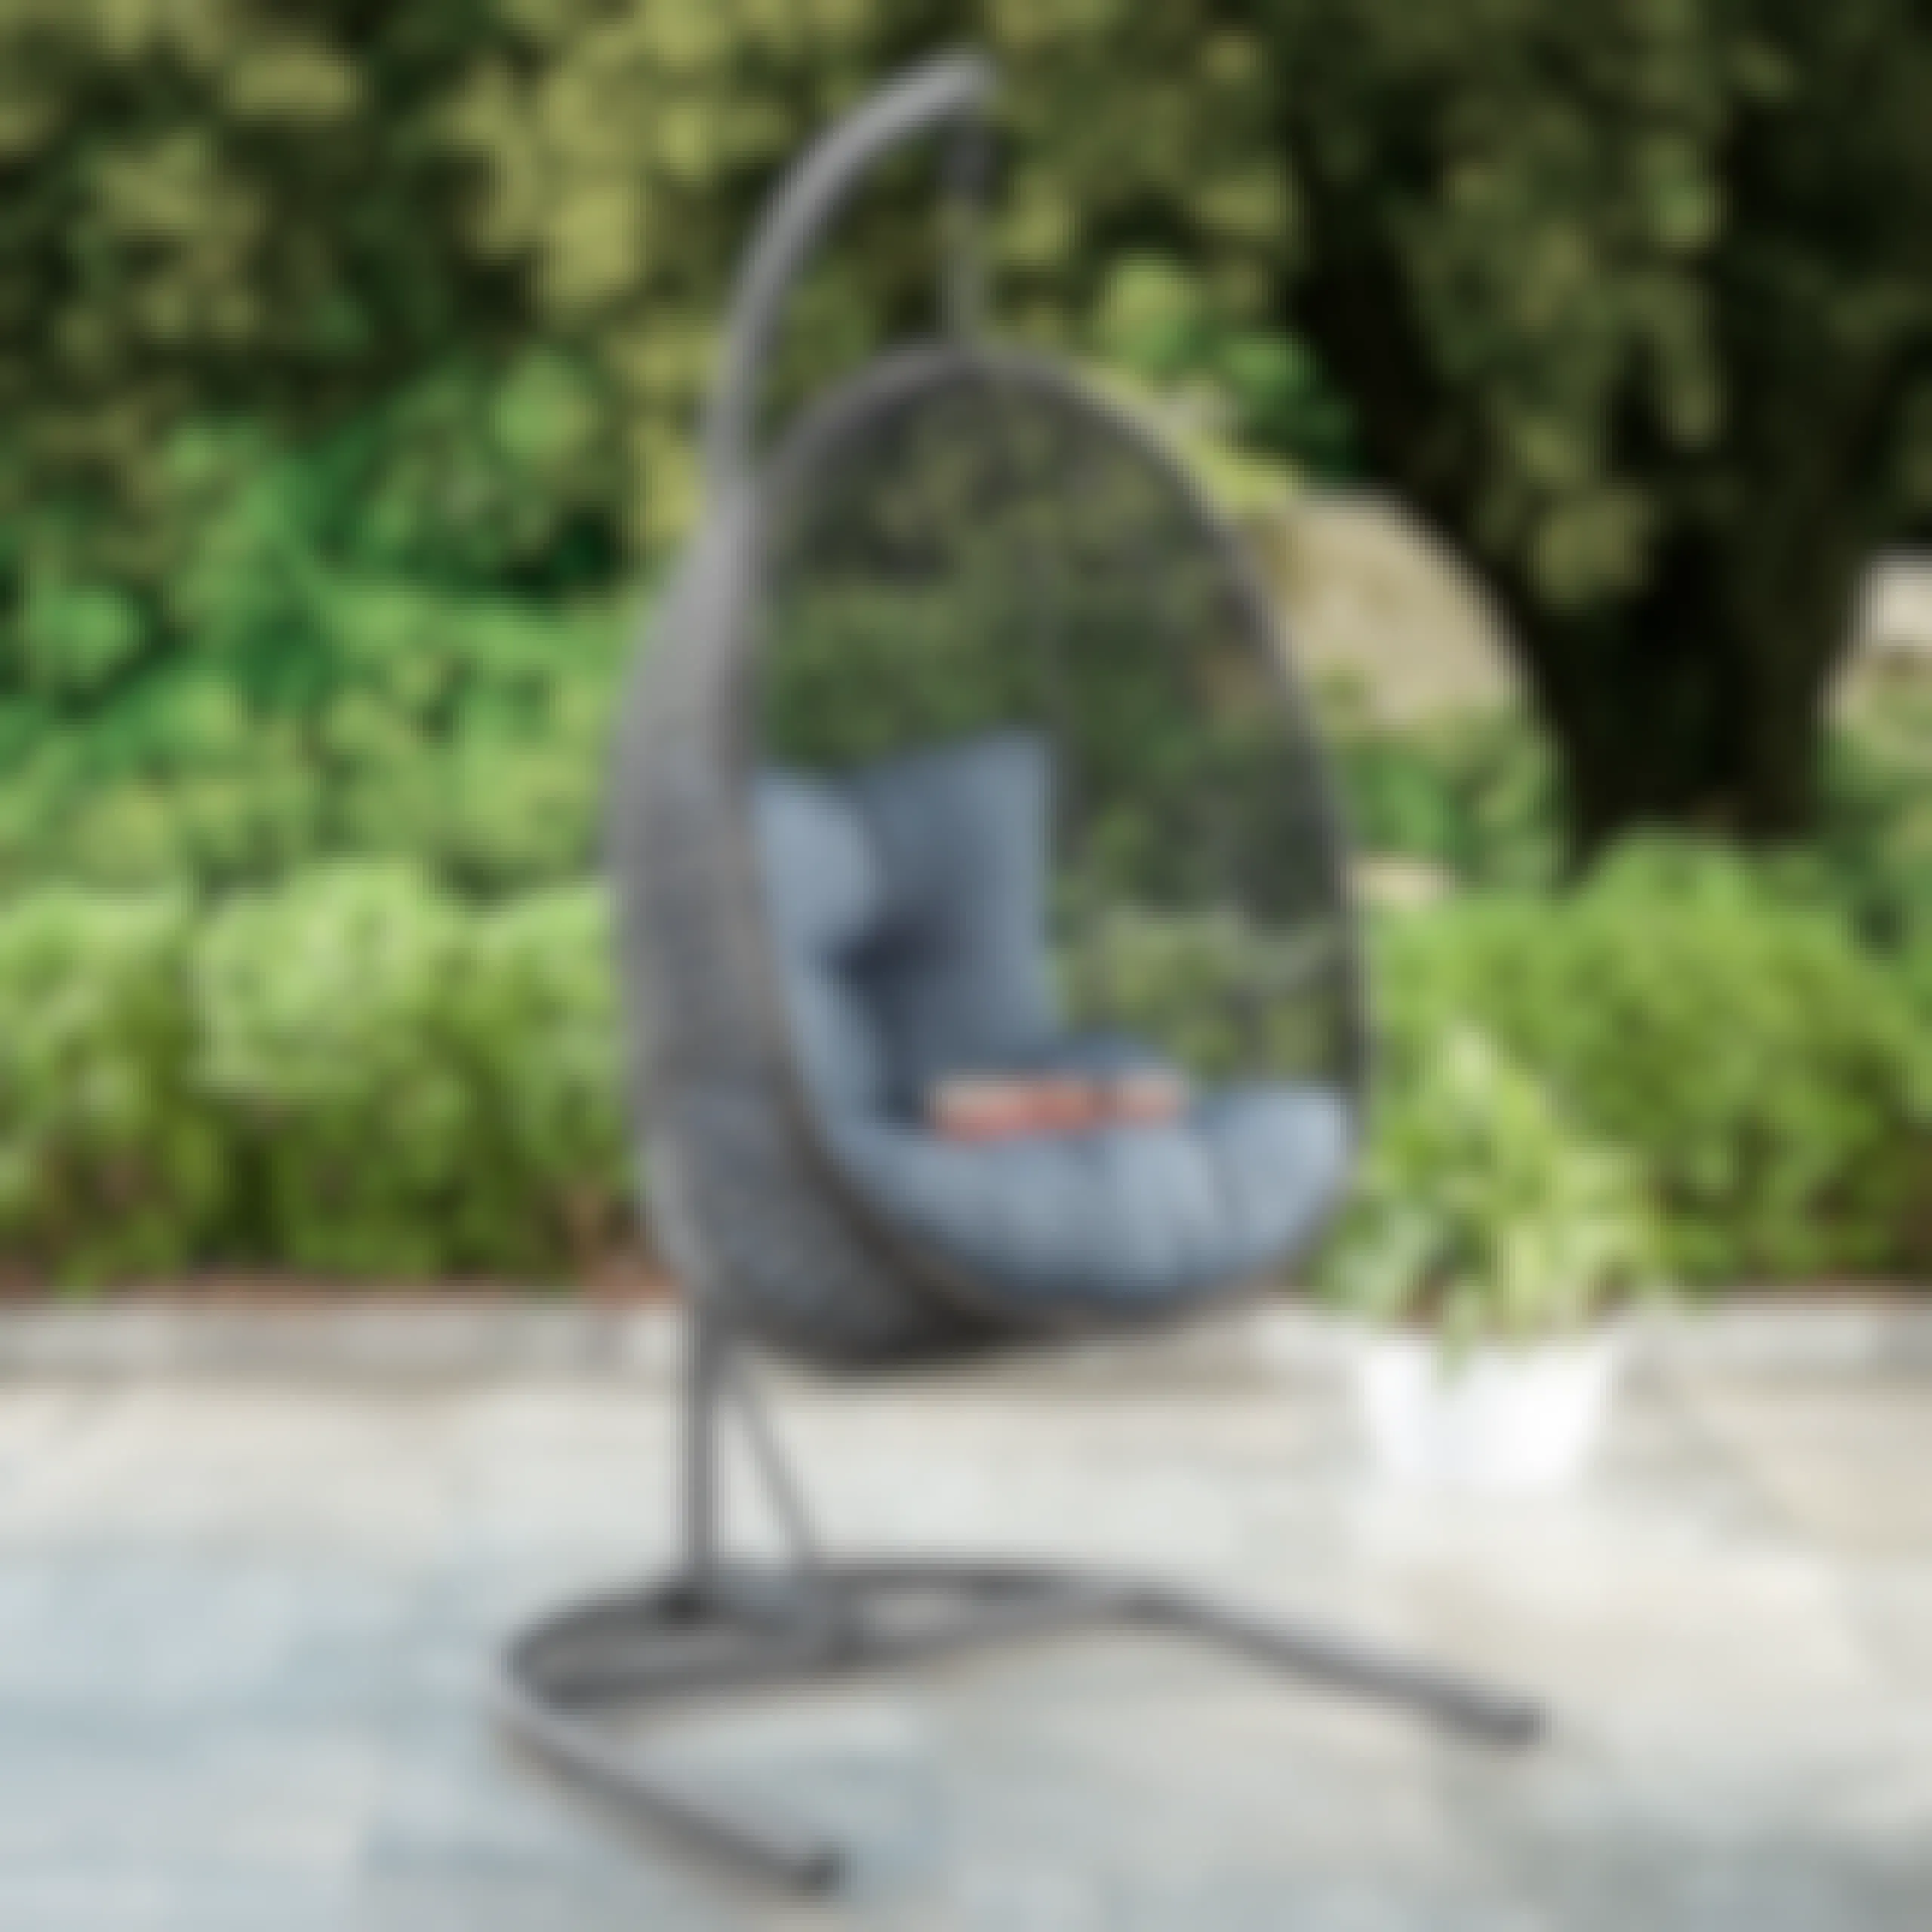 walmart-better-homes-gardens-hanging-egg-chair